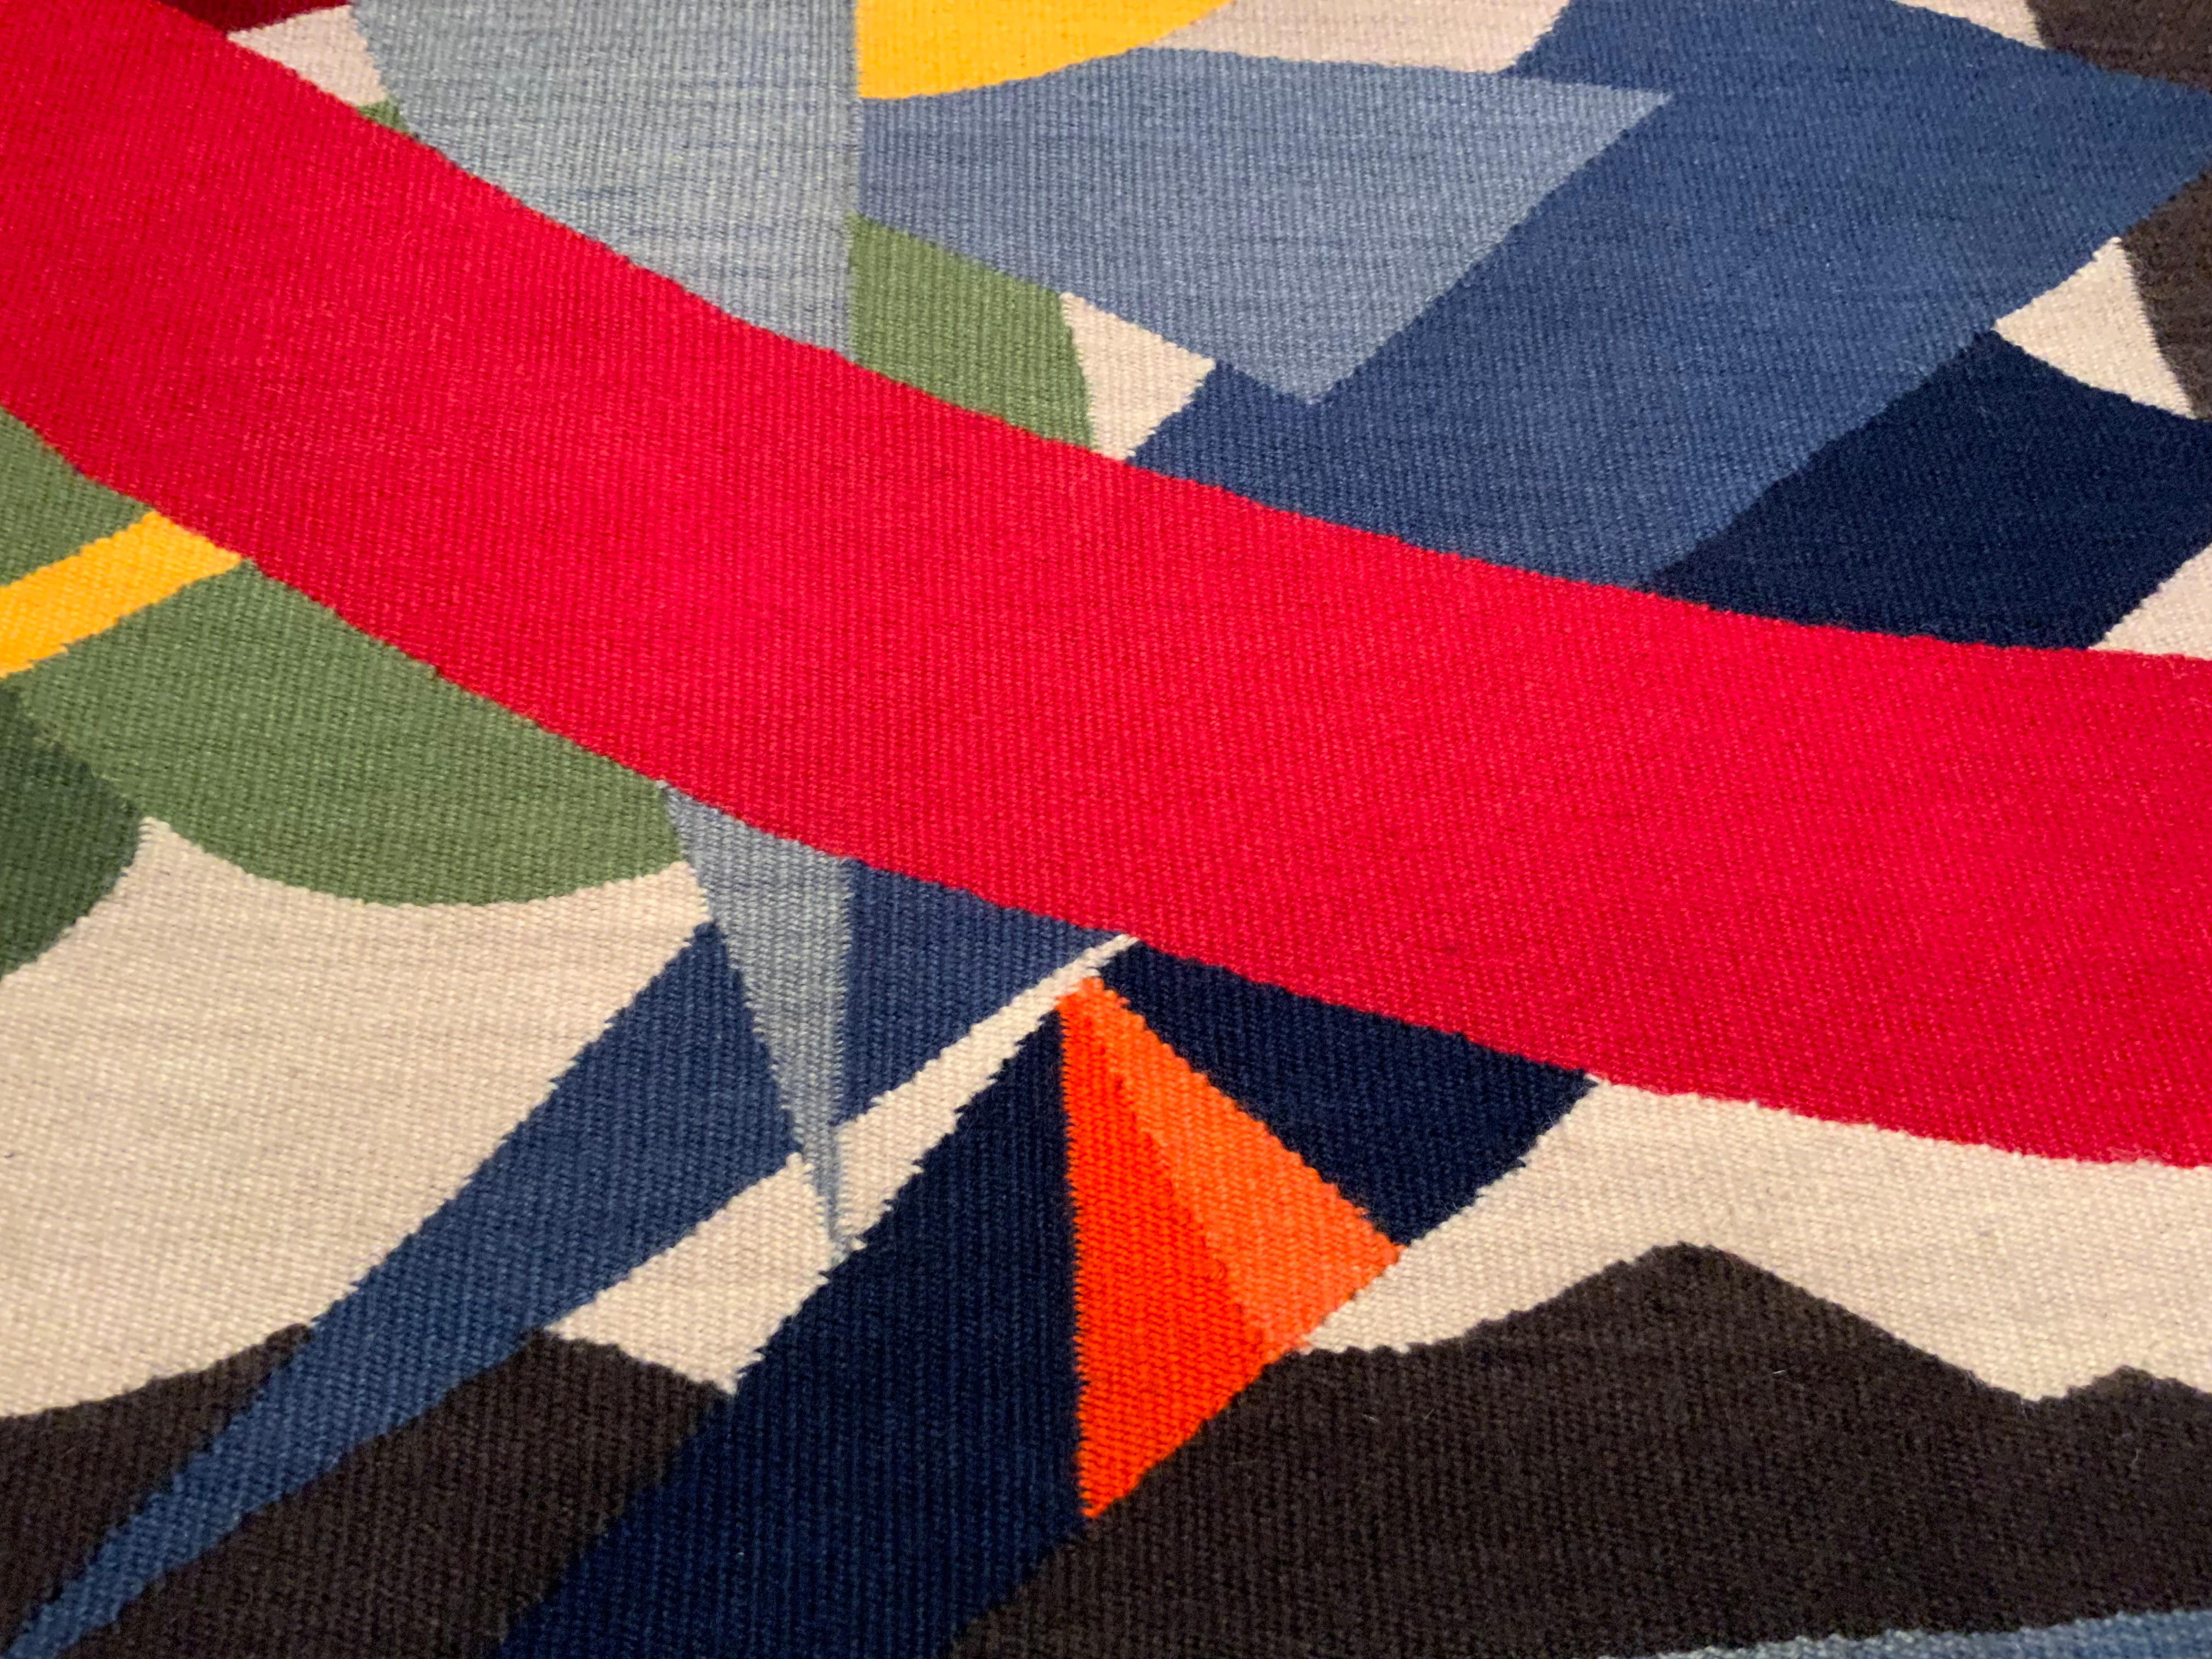 Charmante tapisserie moderne conçue et tissée à la main par Steve Chavez (né au 20e siècle, Américain).  Attribué, titré et daté sur l'étiquette du tissu au verso :  Steve Chavez/ 